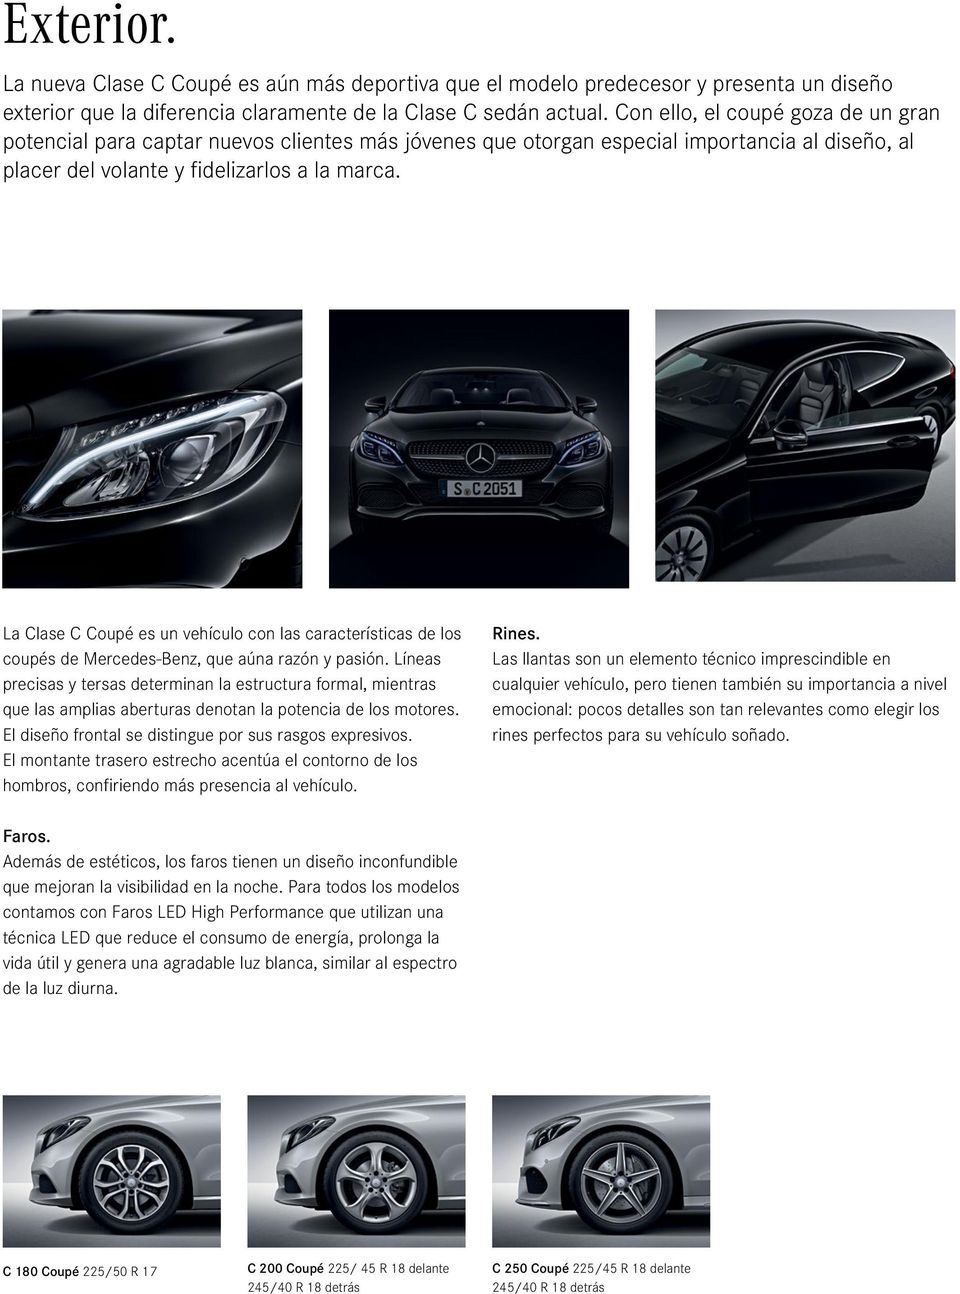 La Clase C Coupé es un vehículo con las características de los coupés de Mercedes-Benz, que aúna razón y pasión.